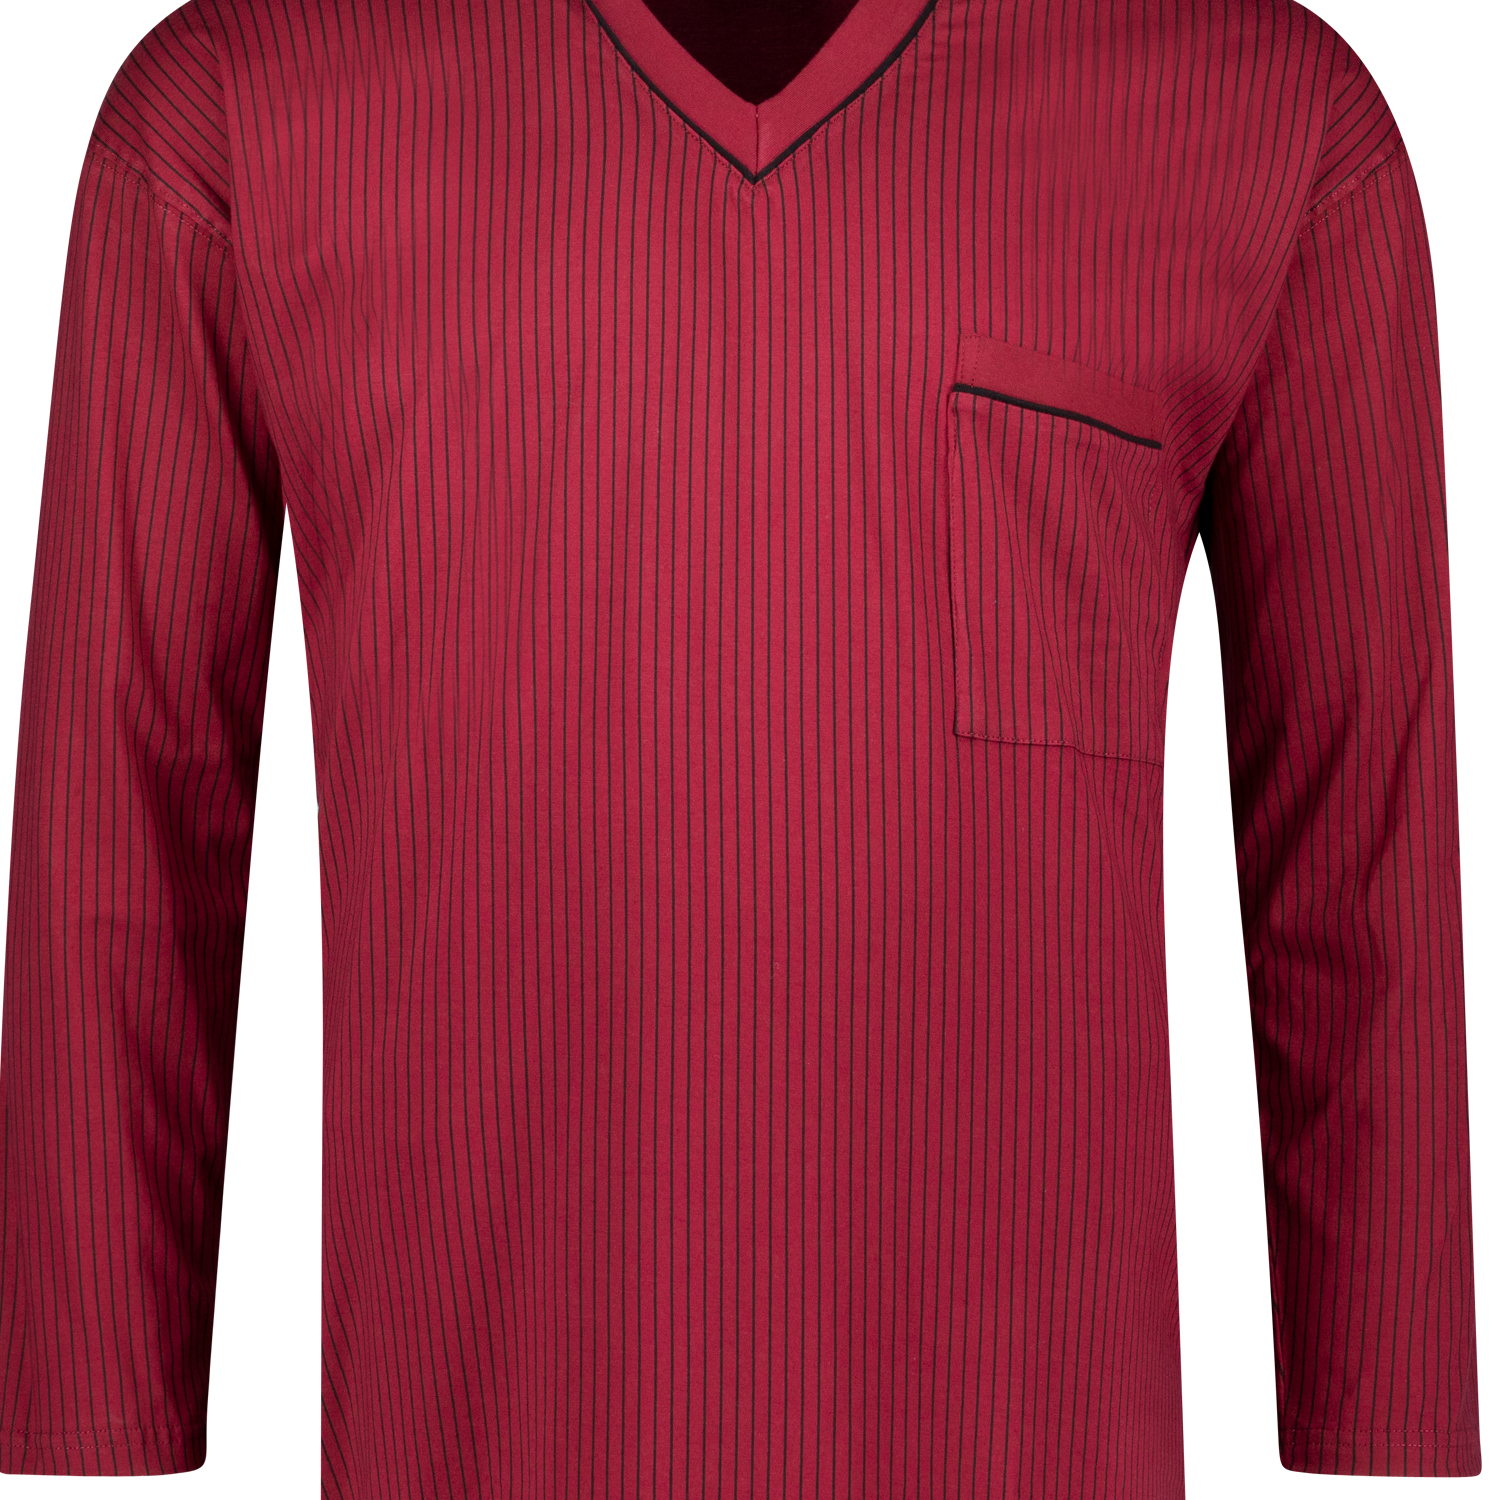 Adamo Langarm-Nachthemd in bordeaux mit schwarzen Streifen bis Übergröße 10XL